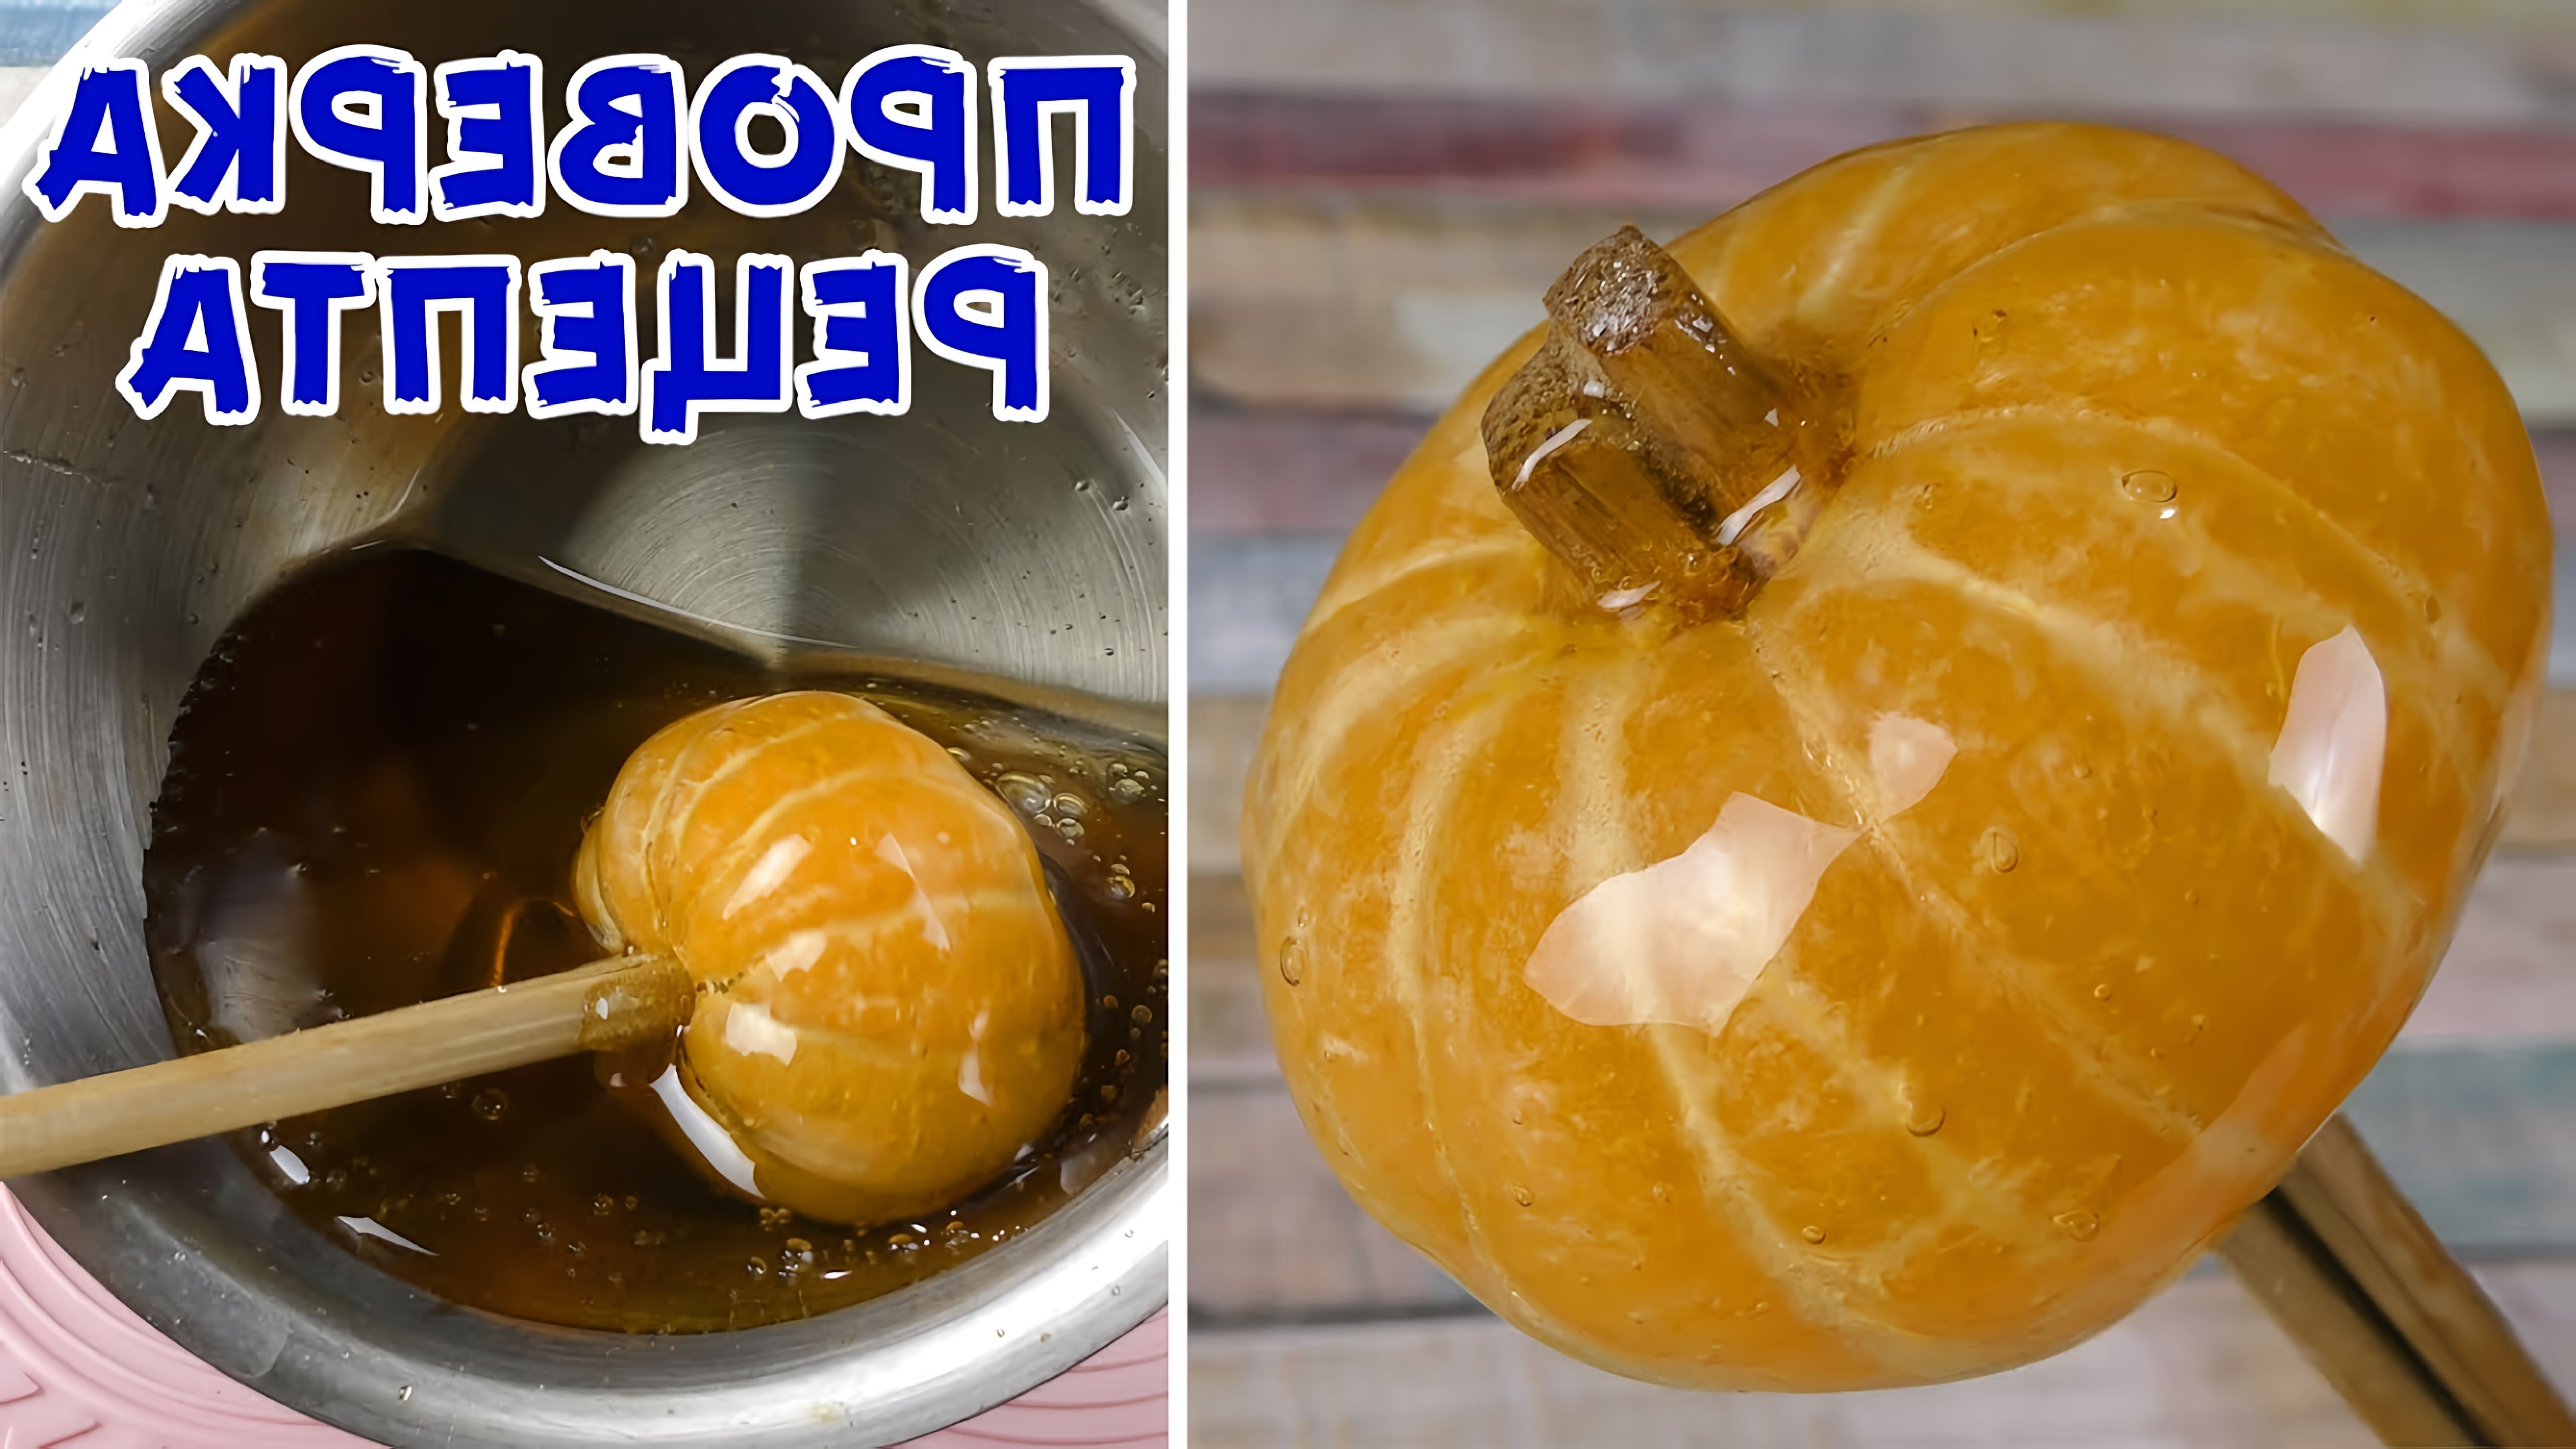 В этом видео демонстрируется процесс приготовления стеклянных мандаринов на Новый Год